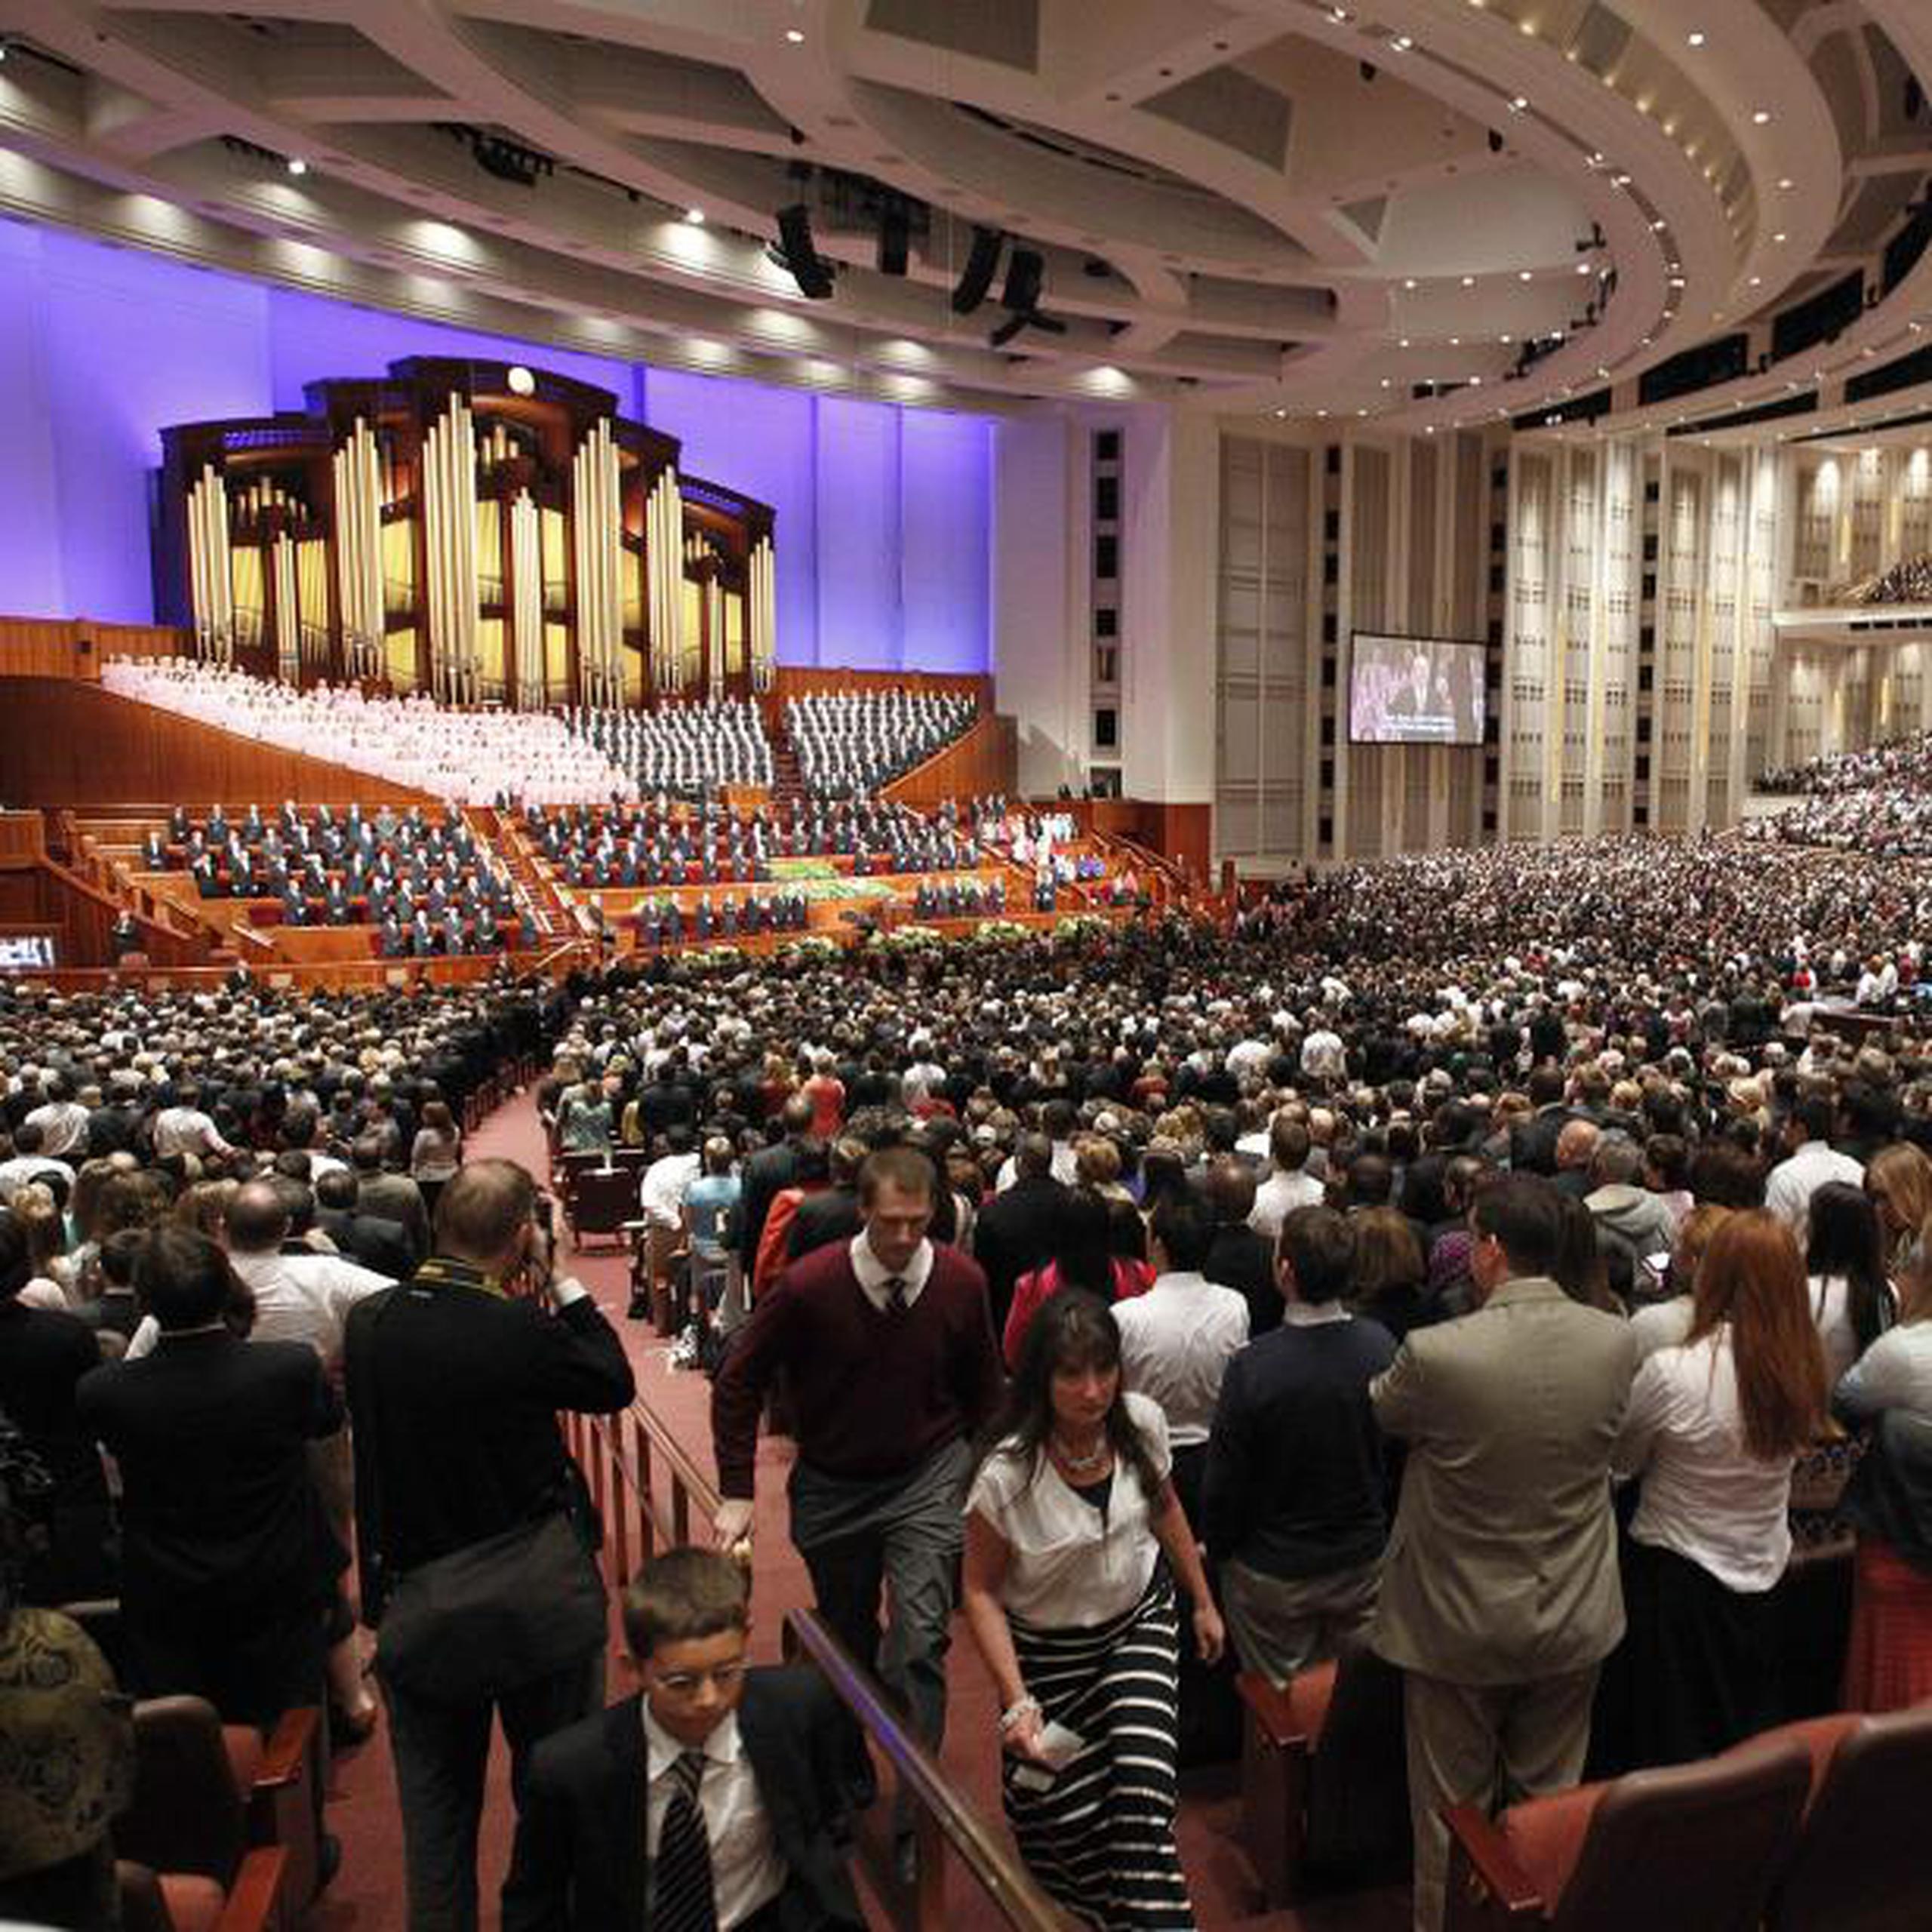 Según datos oficiales, la Iglesia Mormona cuenta con unos 15 millones de seguidores en todo el mundo, de los cuales unos 6.5 millones viven en Estados Unidos.  (EFE)